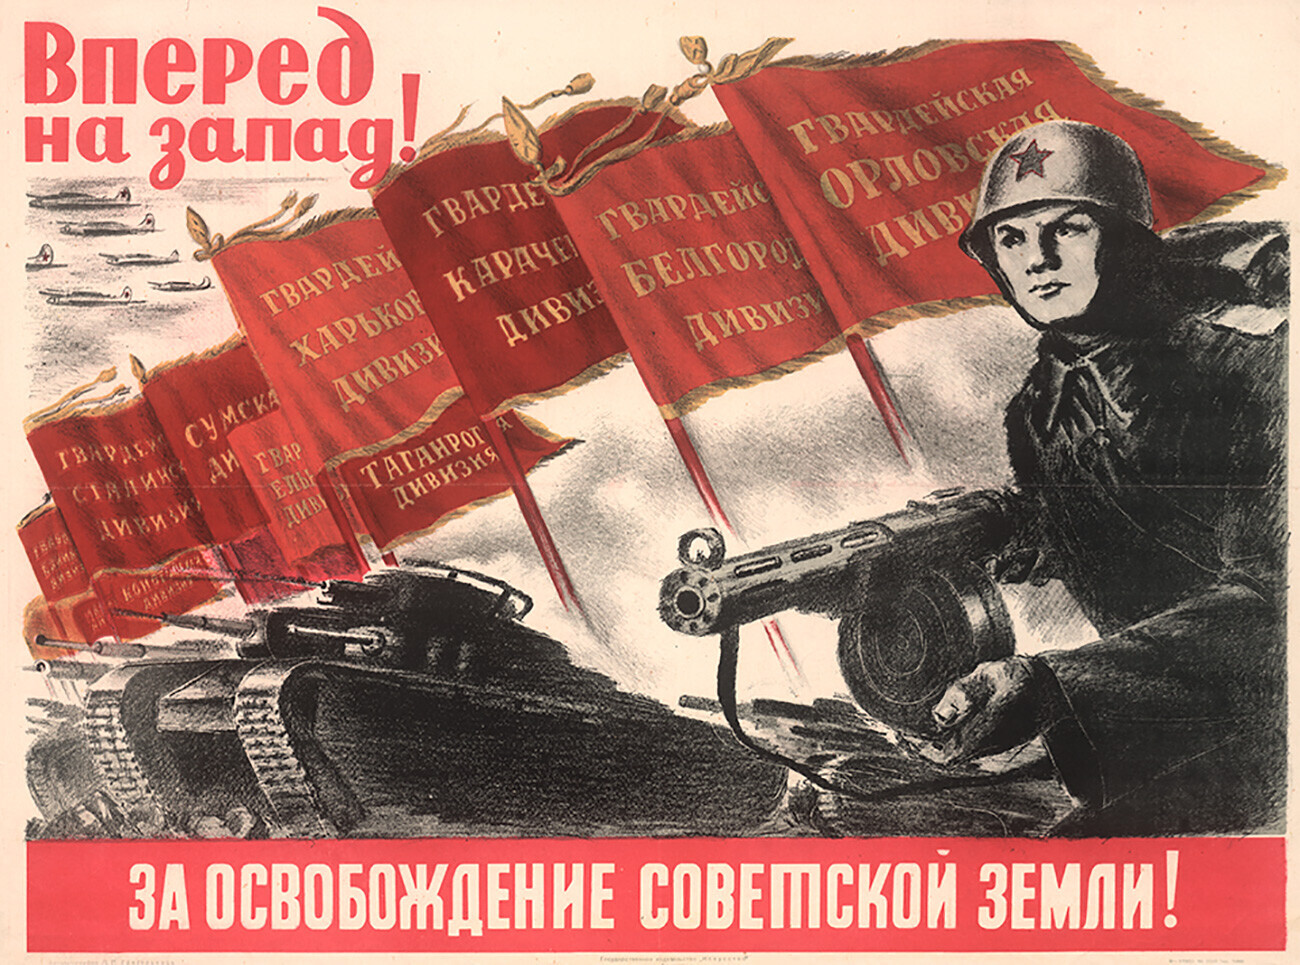 “Rumo a Oeste! Pela libertação das terras soviéticas!”
